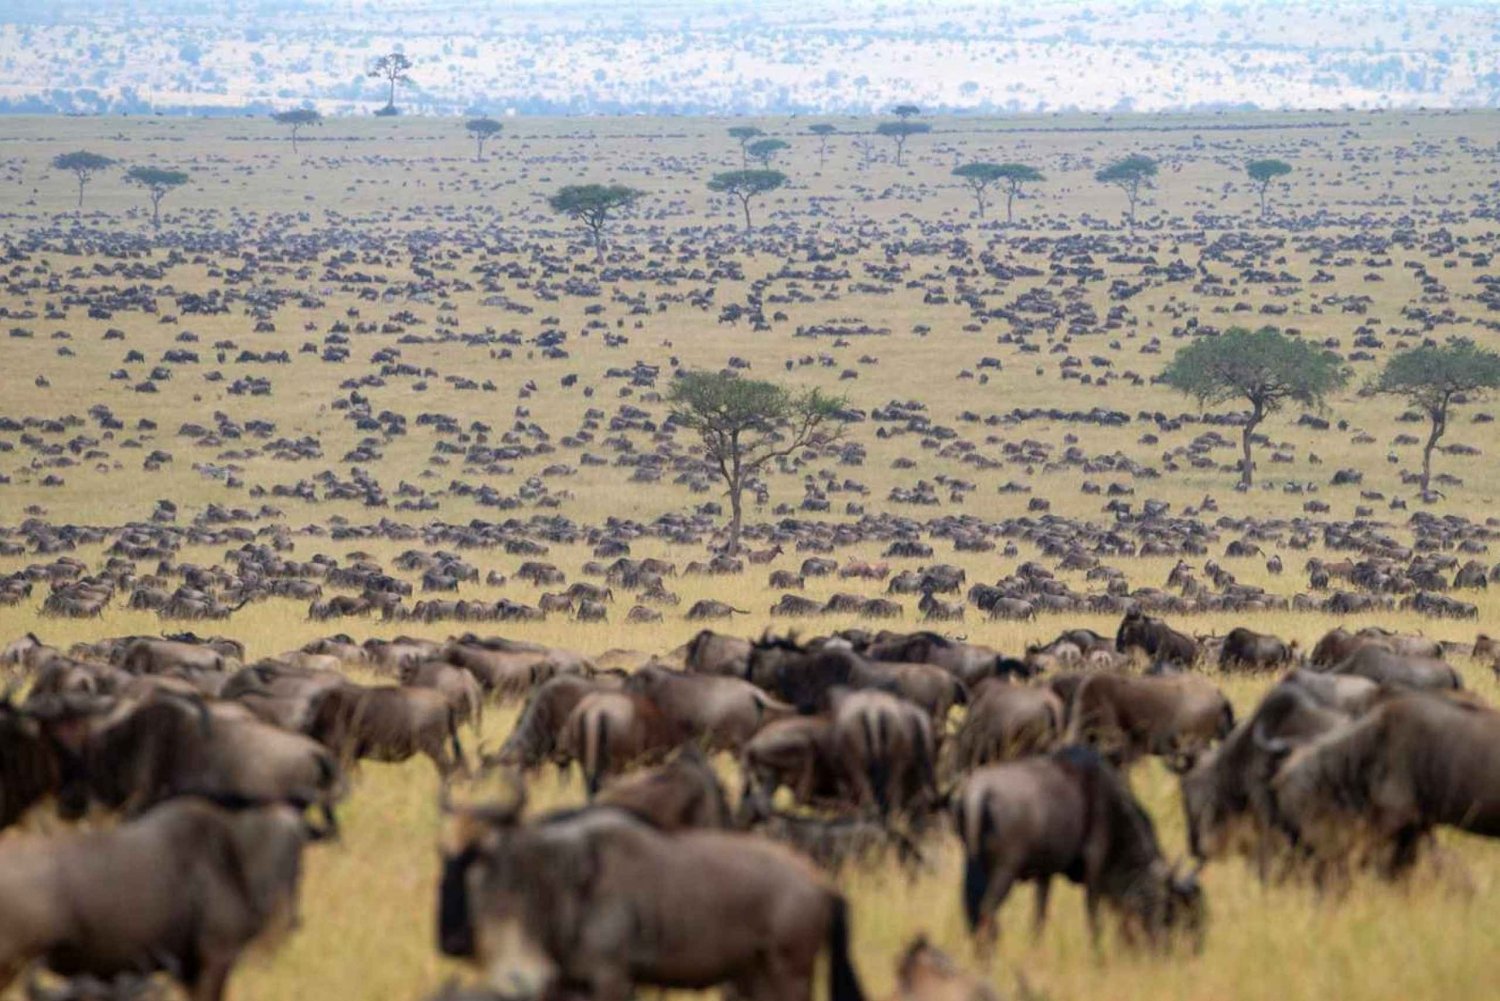 Nairobista: 3 päivän Masai Mara gnuu vaellus safari